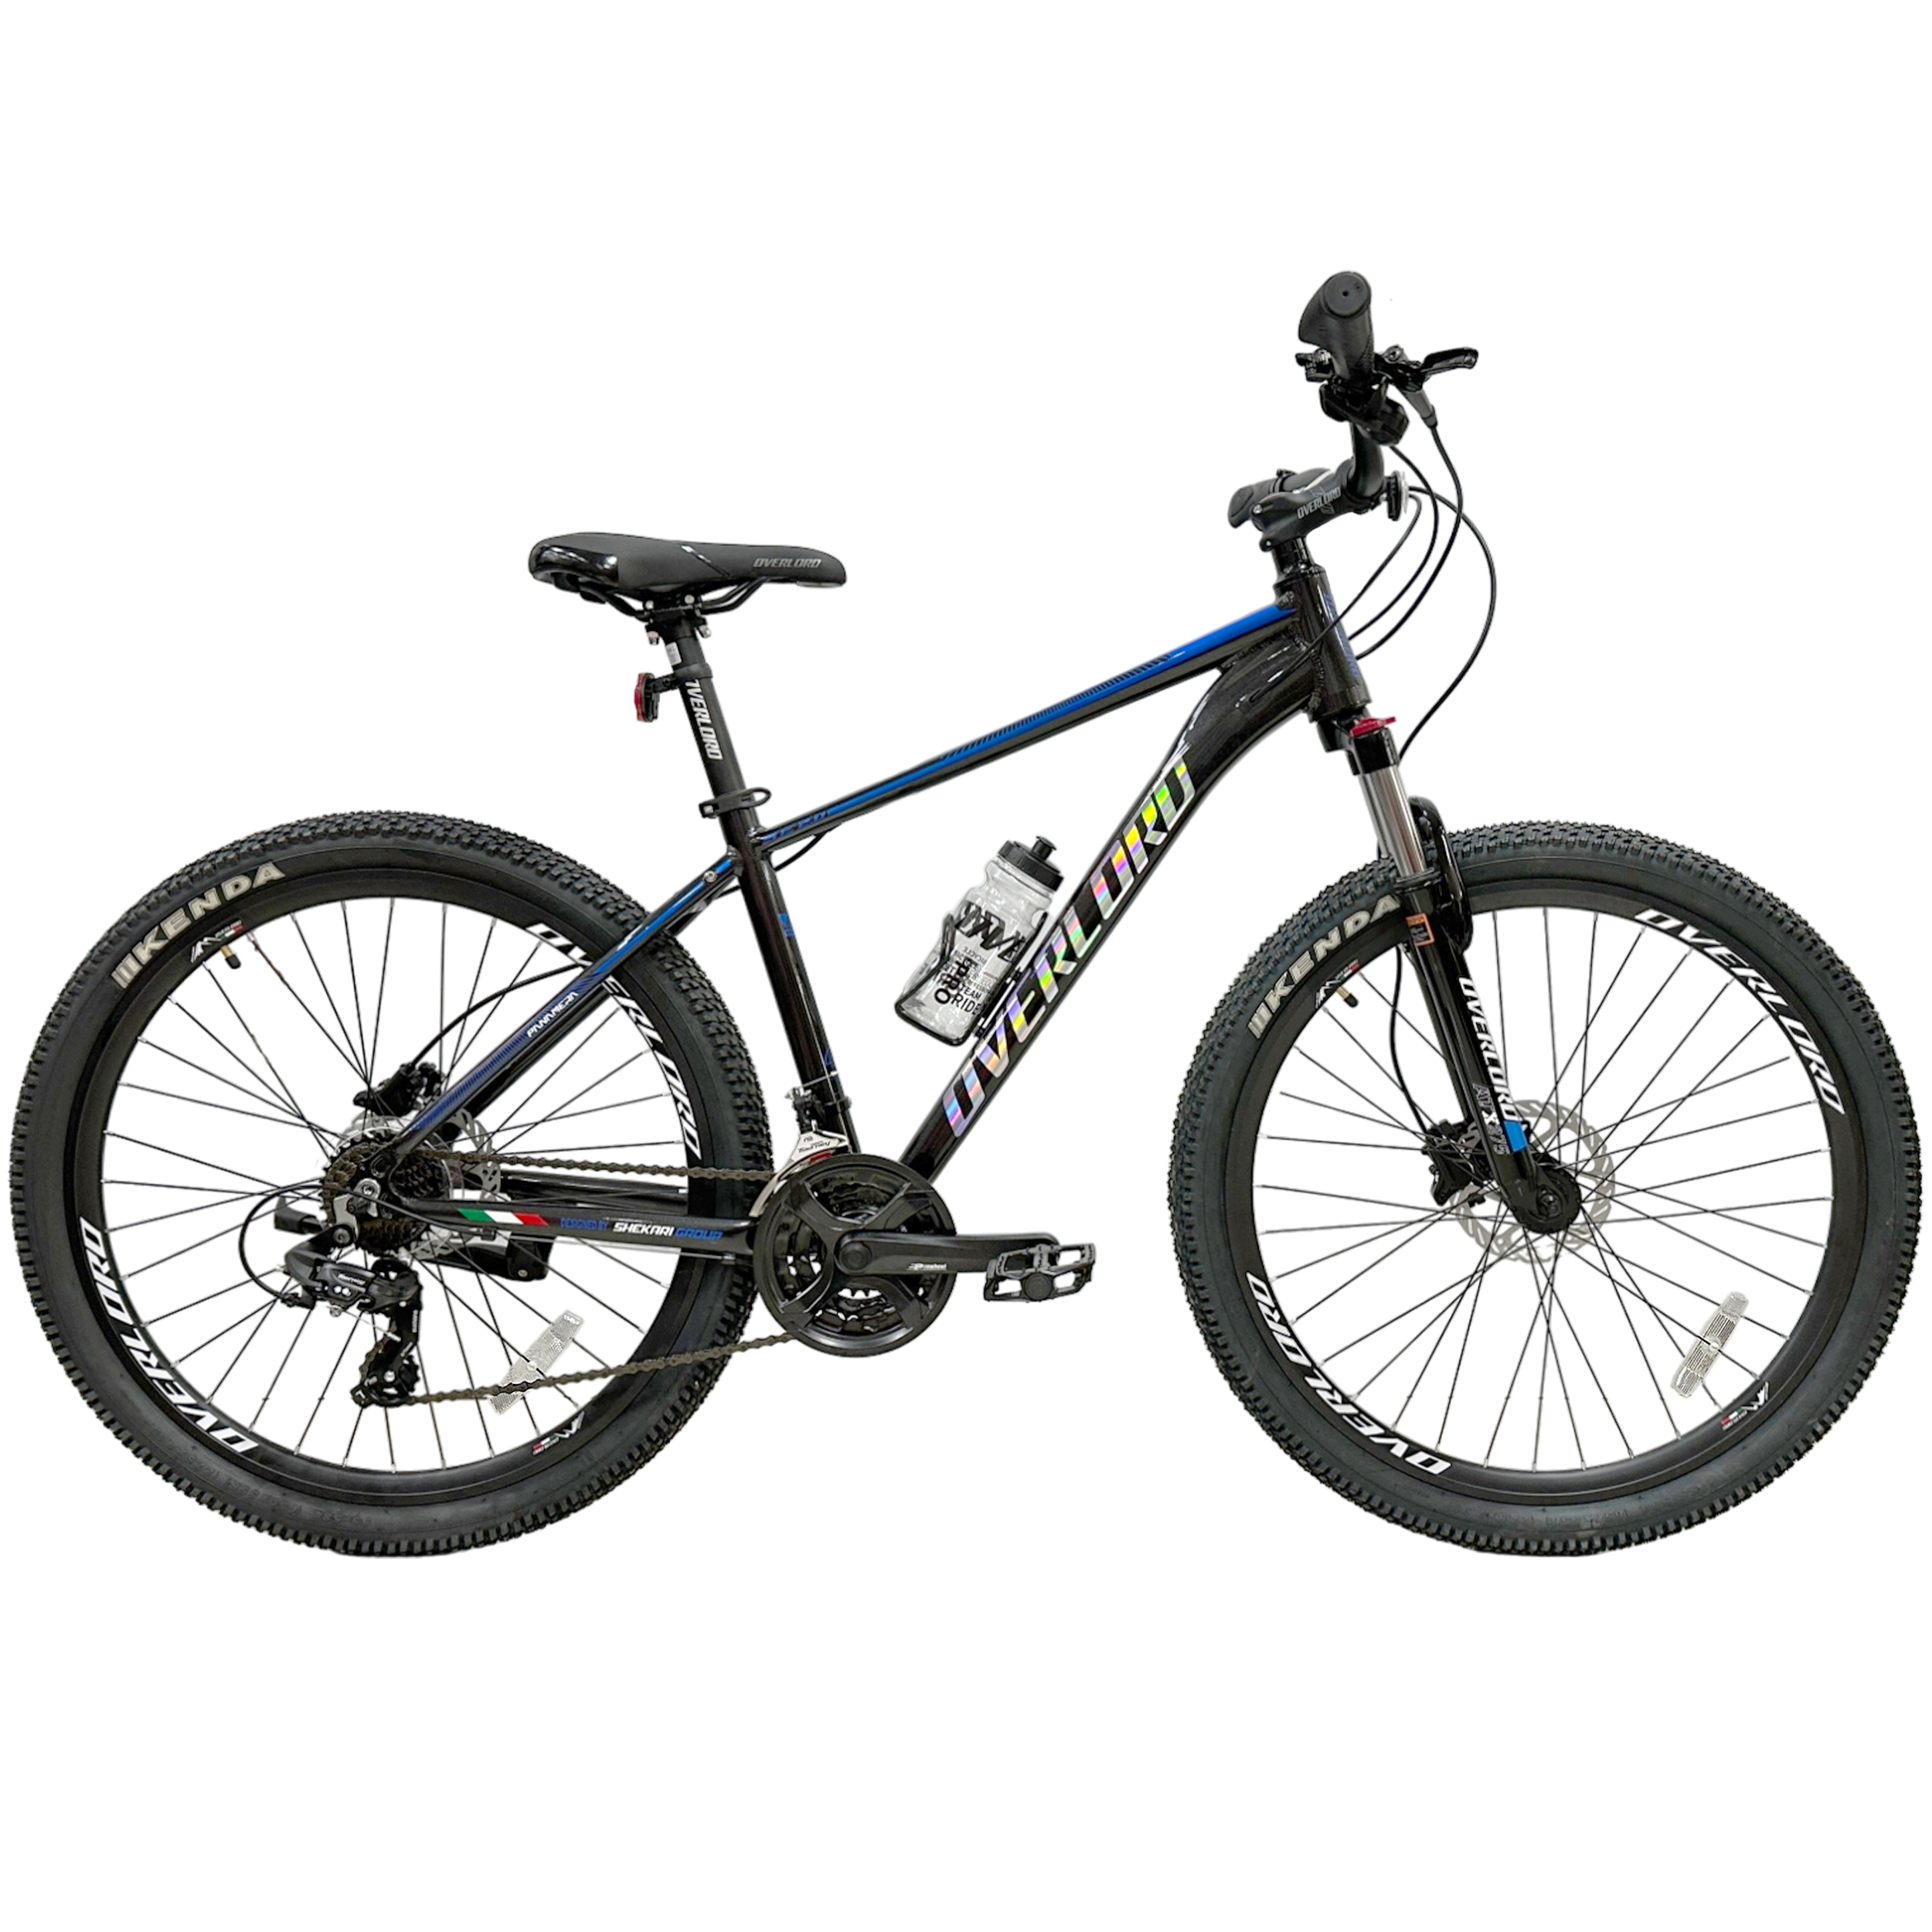 نکته خرید - قیمت روز دوچرخه کوهستان اورلورد مدل PANAMERA SE 2.0D سایز طوقه 27.5 خرید